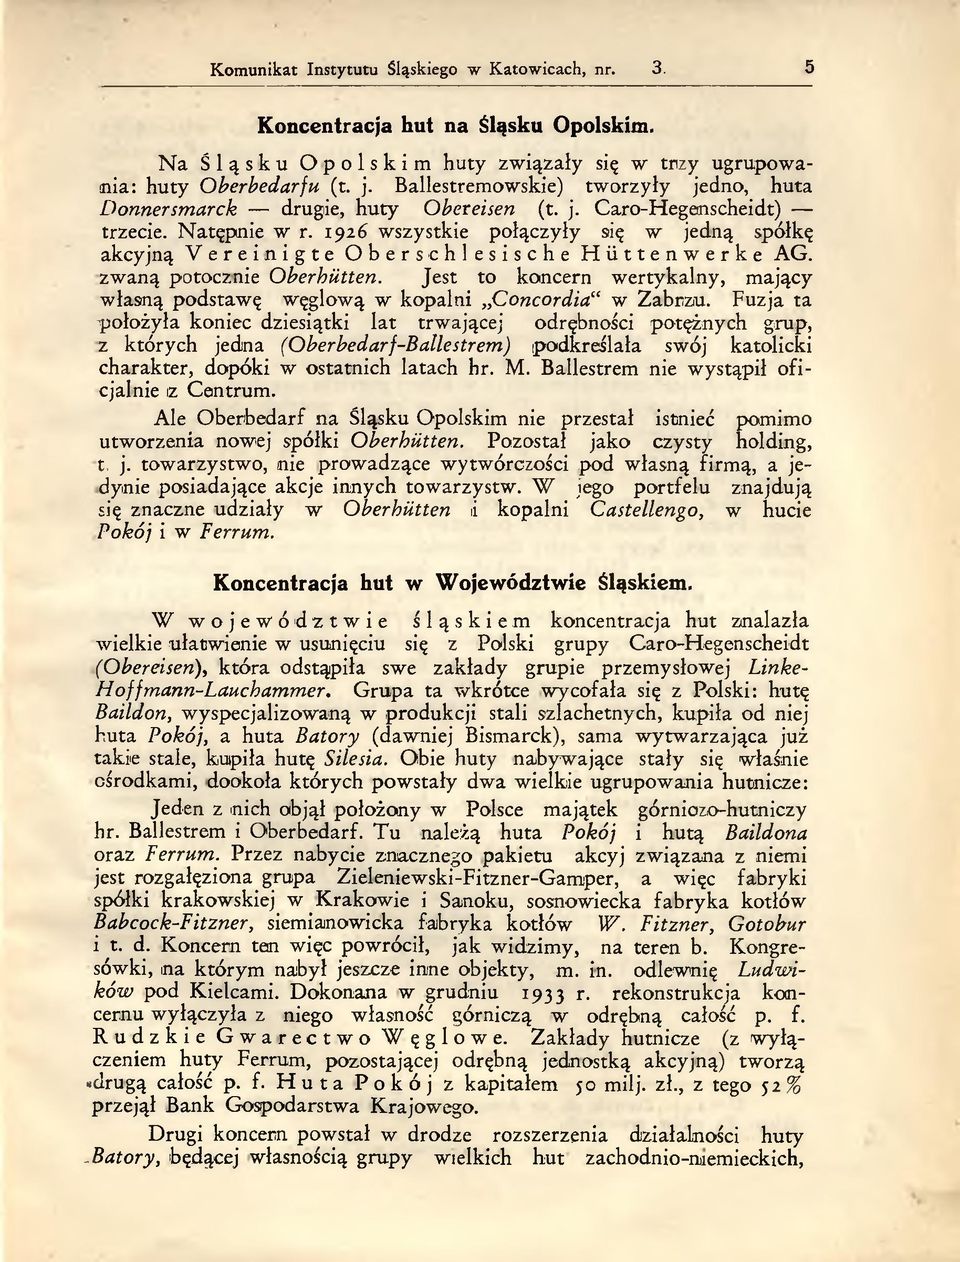 1926 wszystkie połączyły się w jedną spółkę akcyjną Vereinigte Ober schlesische Hüttenwerke AG. zwaną potocznie Oberhütten.